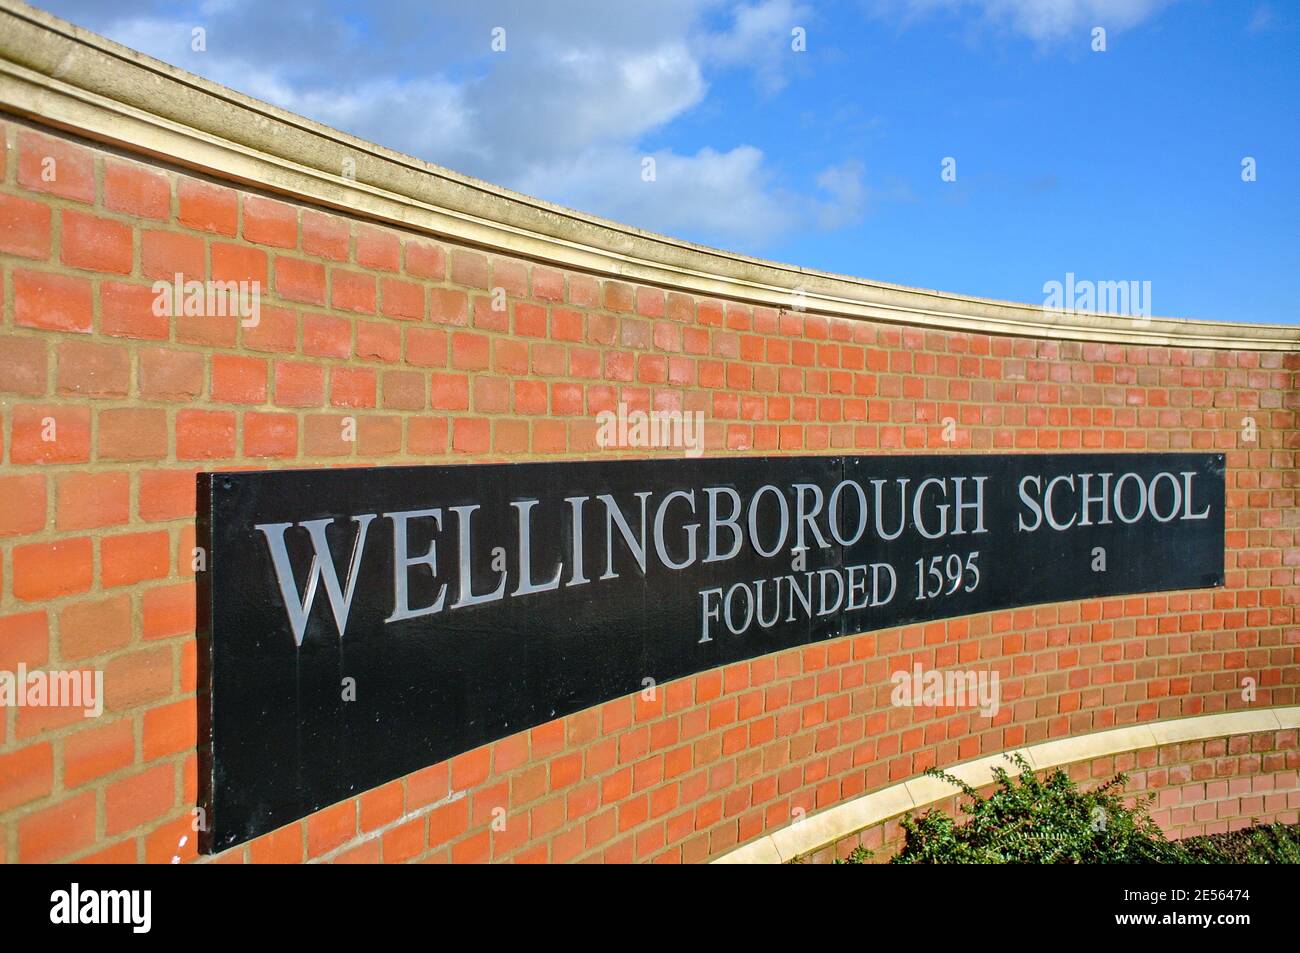 Wellingborough School sign in Wellingborough Northampton England UK Stock Photo